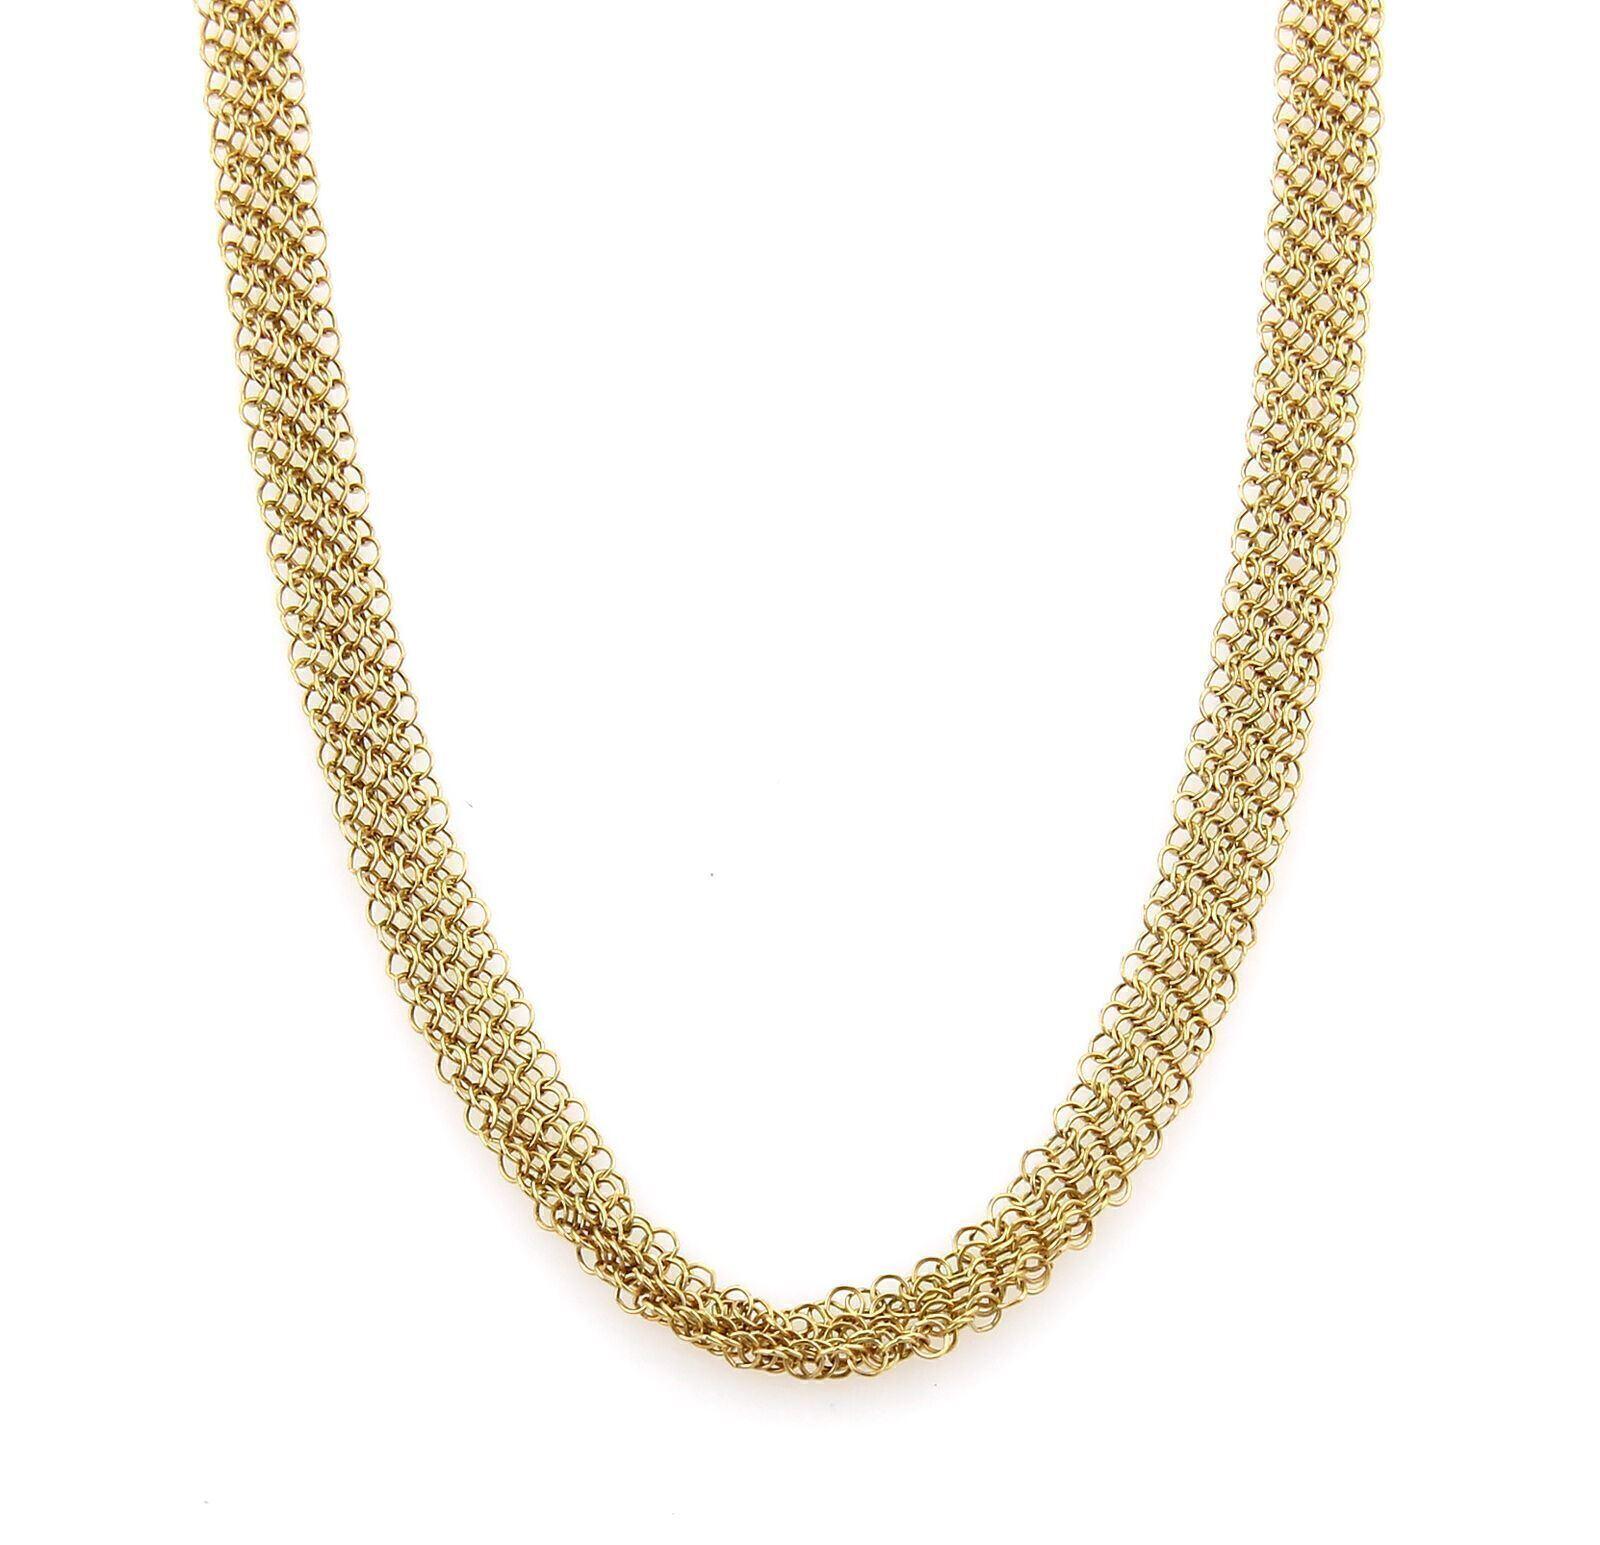 Tiffany & Co. Peretti Collier en or jaune 18k avec chaîne à mailles larges de 6 mm 30